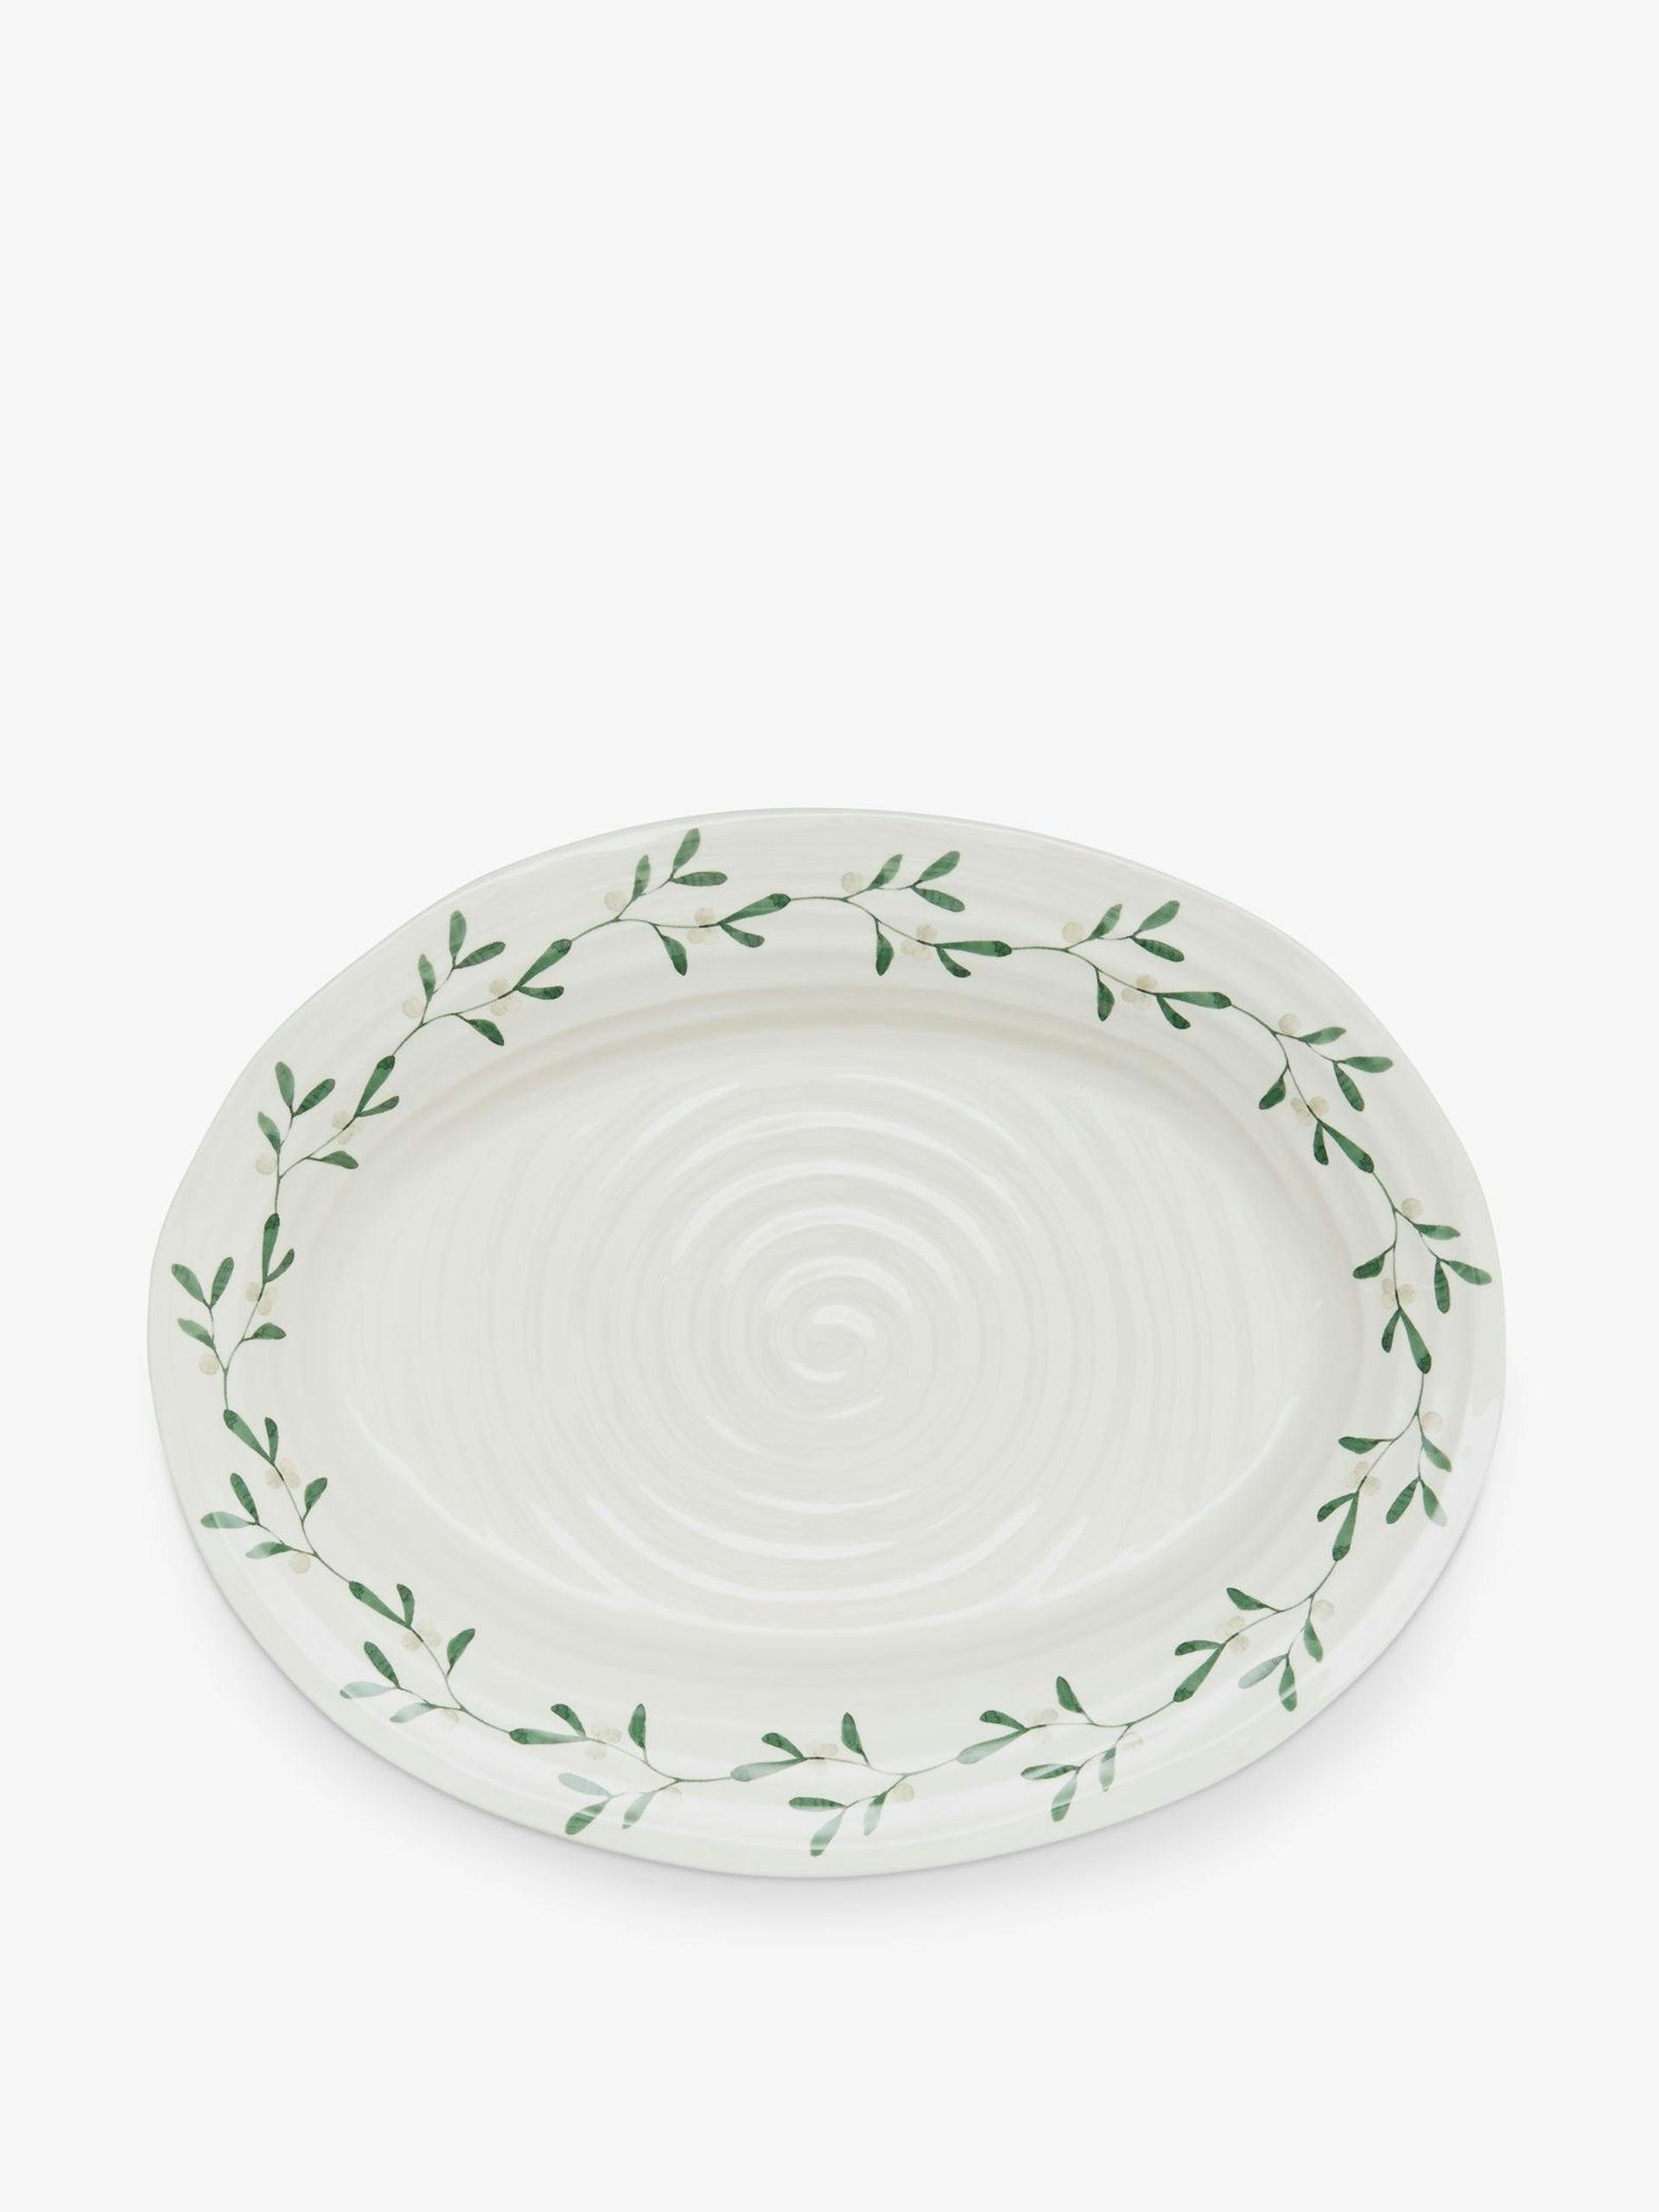 Portmeirion mistletoe oval serving platter